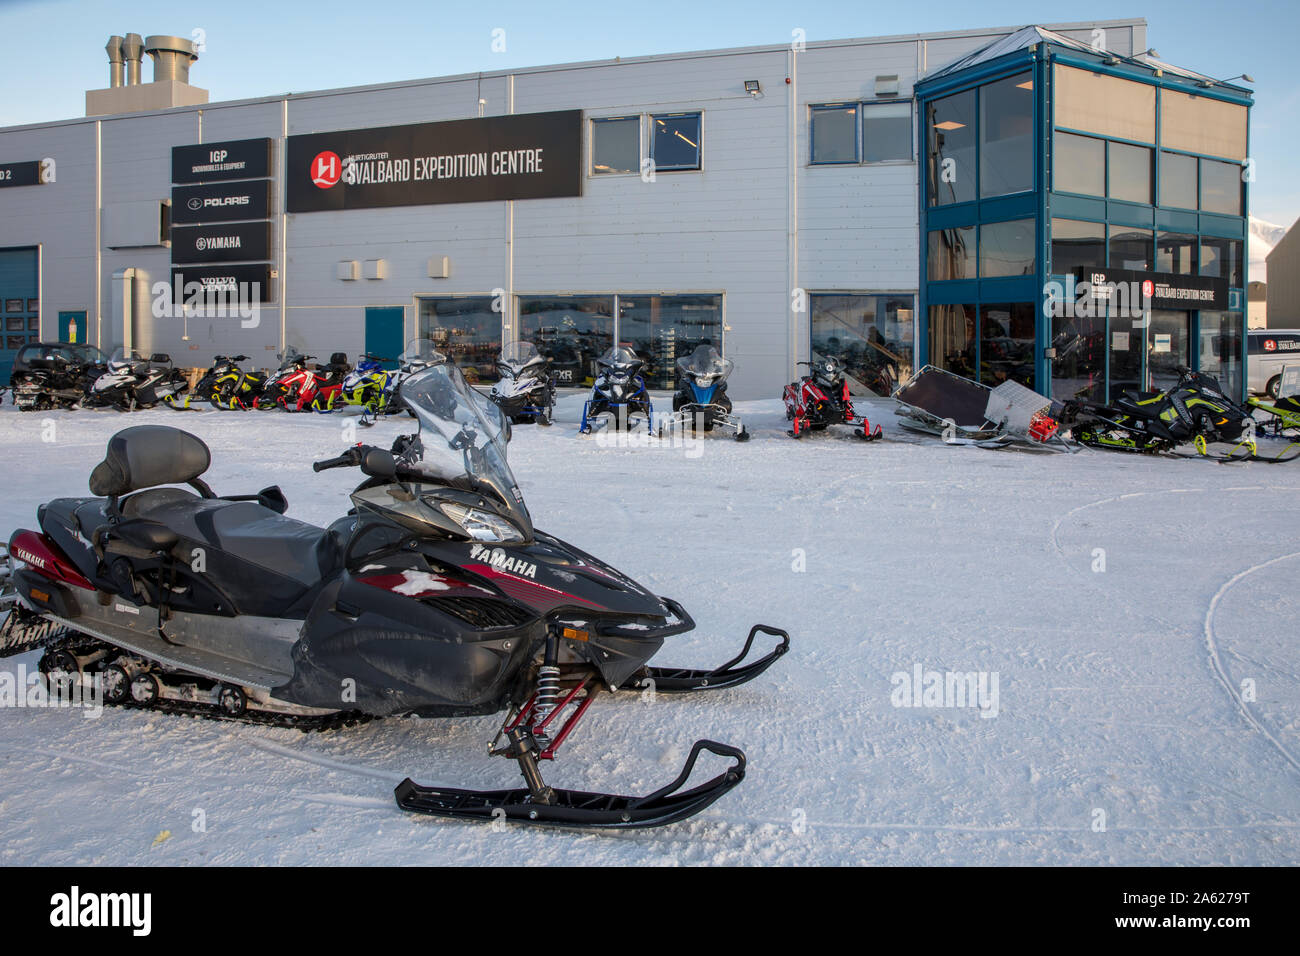 Longyearbyen, Svalbard en Norvège - Mars 2019 : Expédition Svalbard Hurtigruten Centre à Longyearbyen. Motoneige pour louer. Banque D'Images